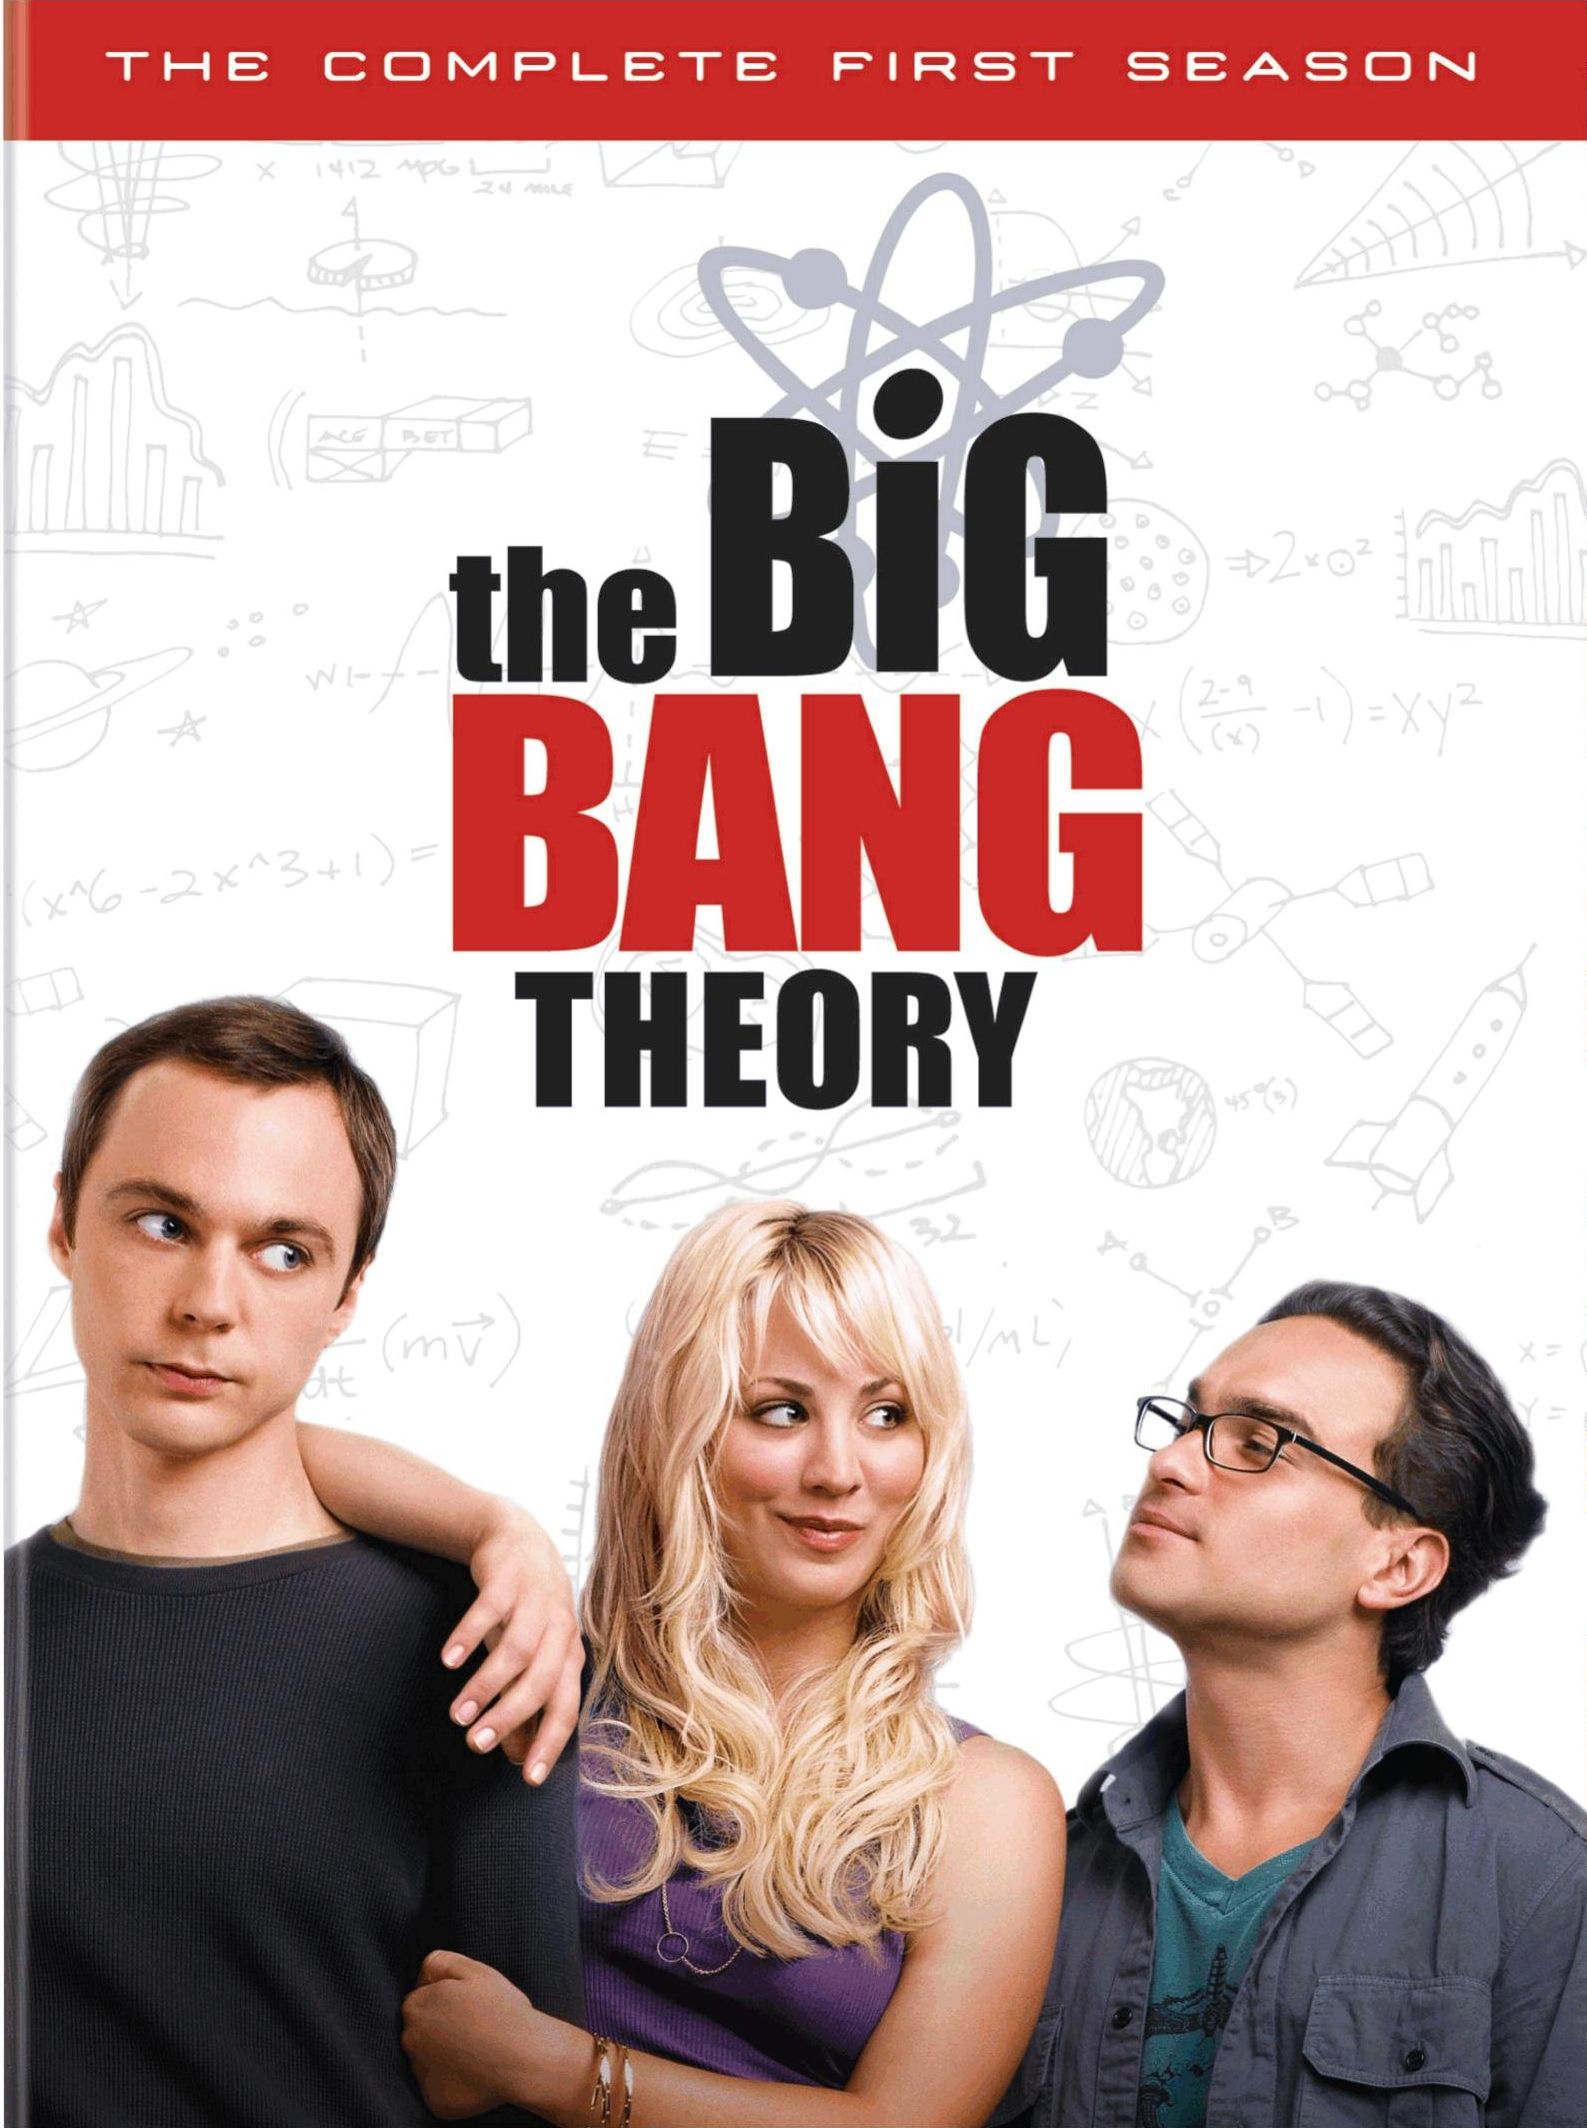 The Big Bang Theory (season 10) - Wikipedia